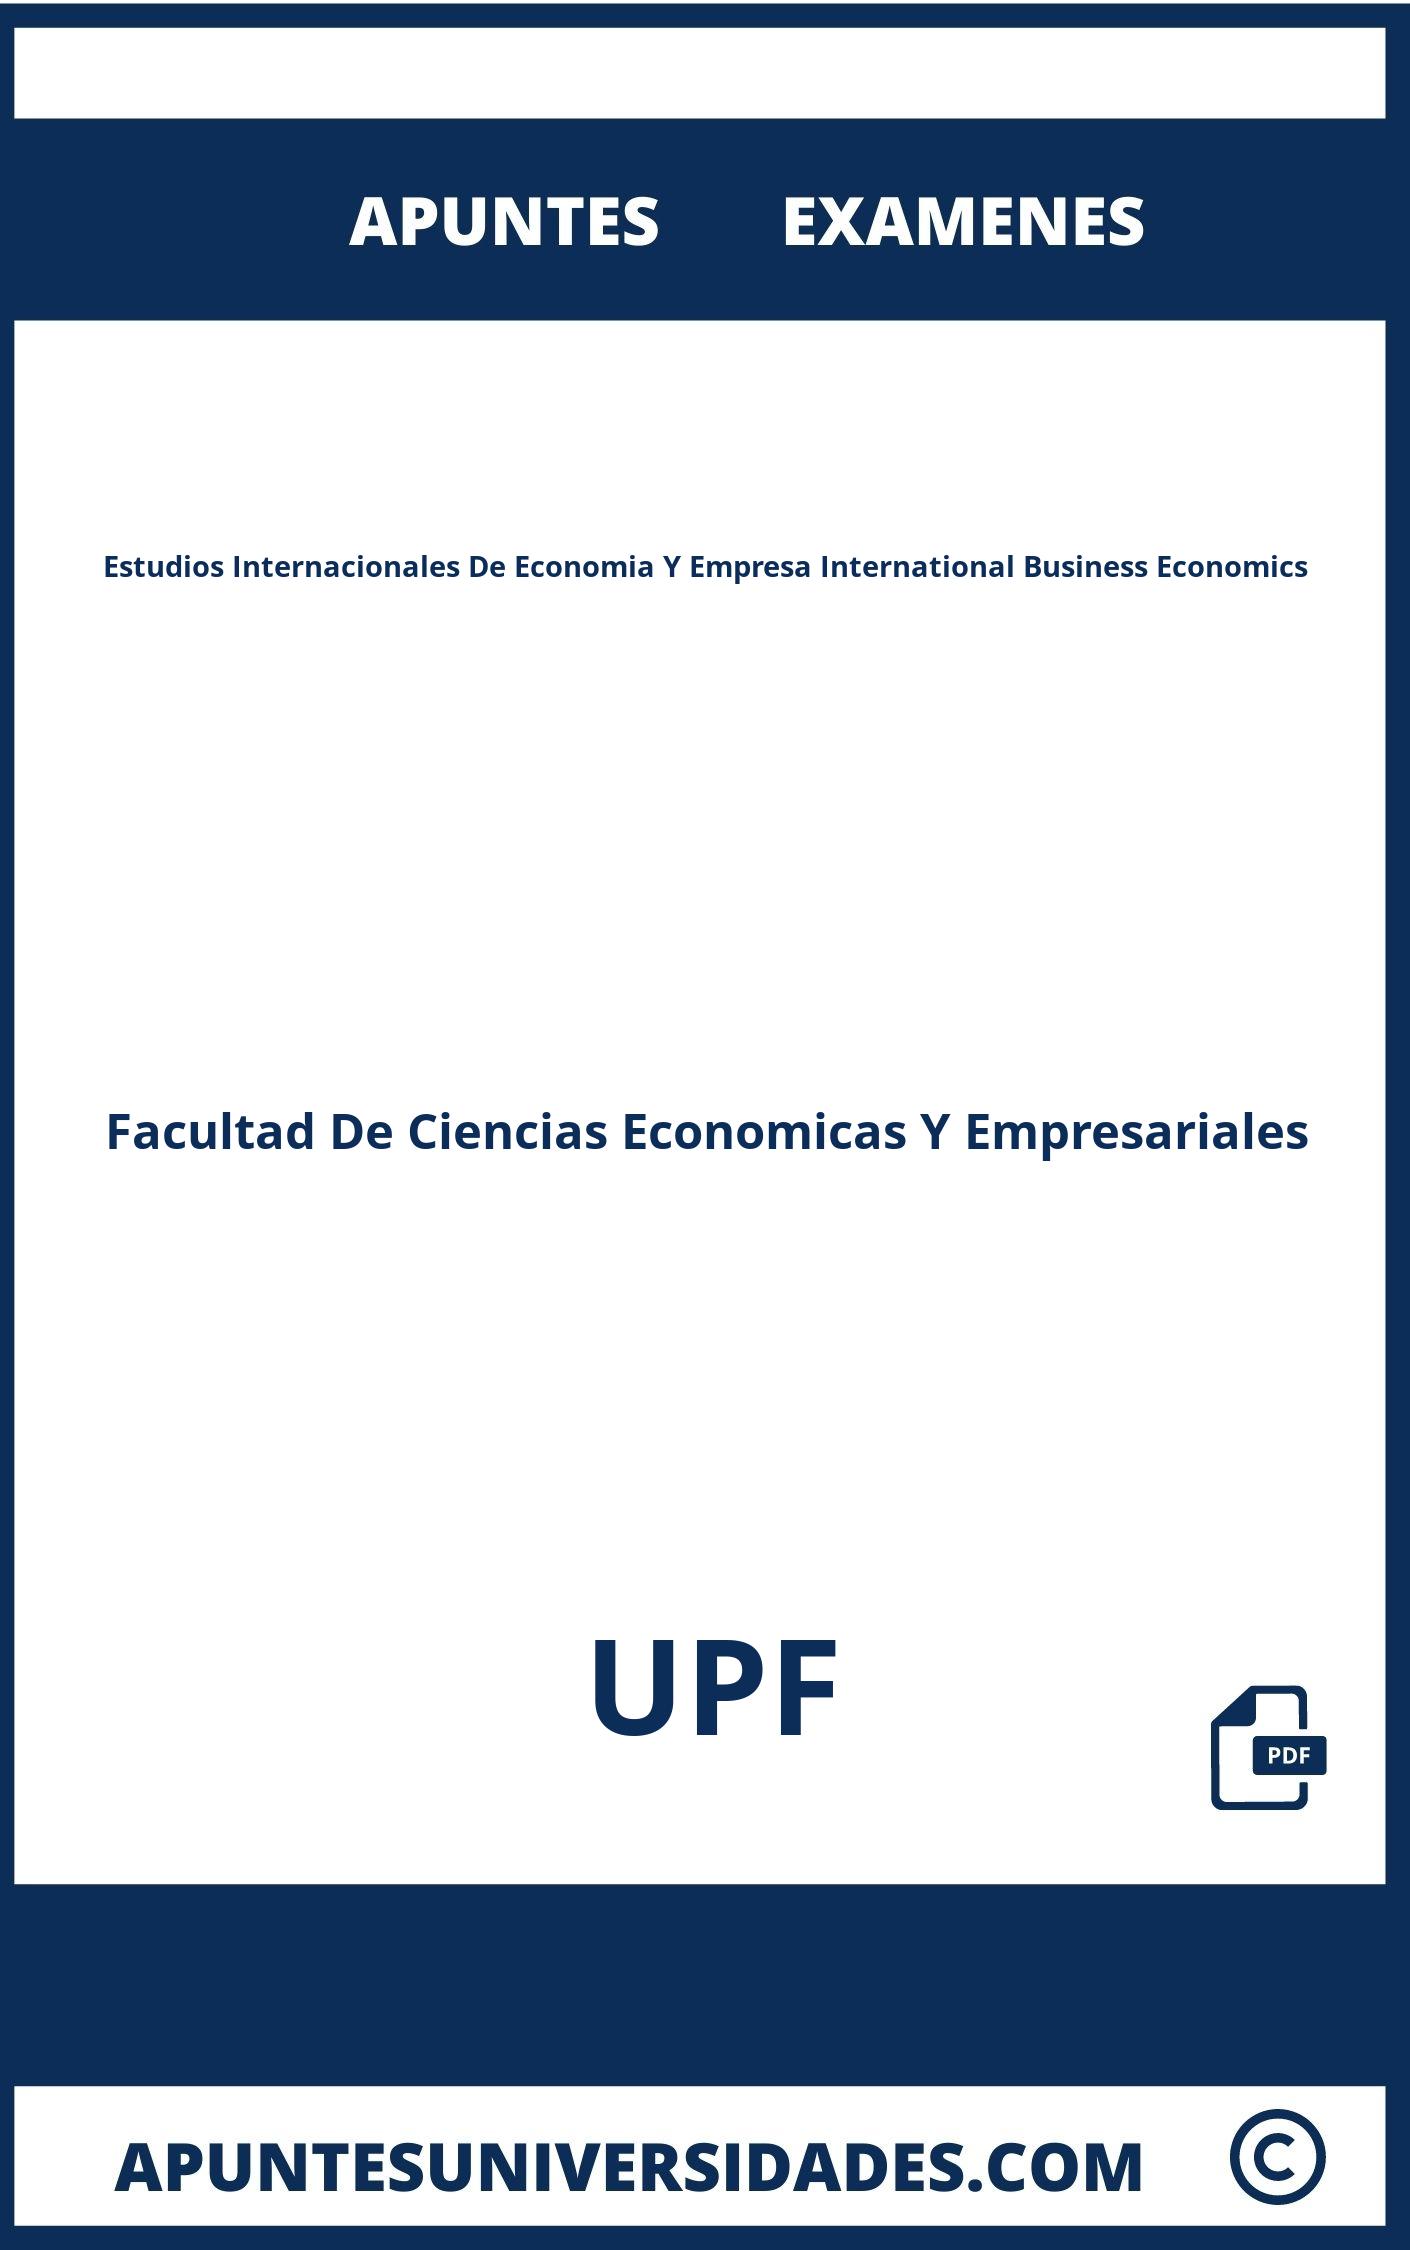 Apuntes y Examenes Estudios Internacionales De Economia Y Empresa International Business Economics UPF